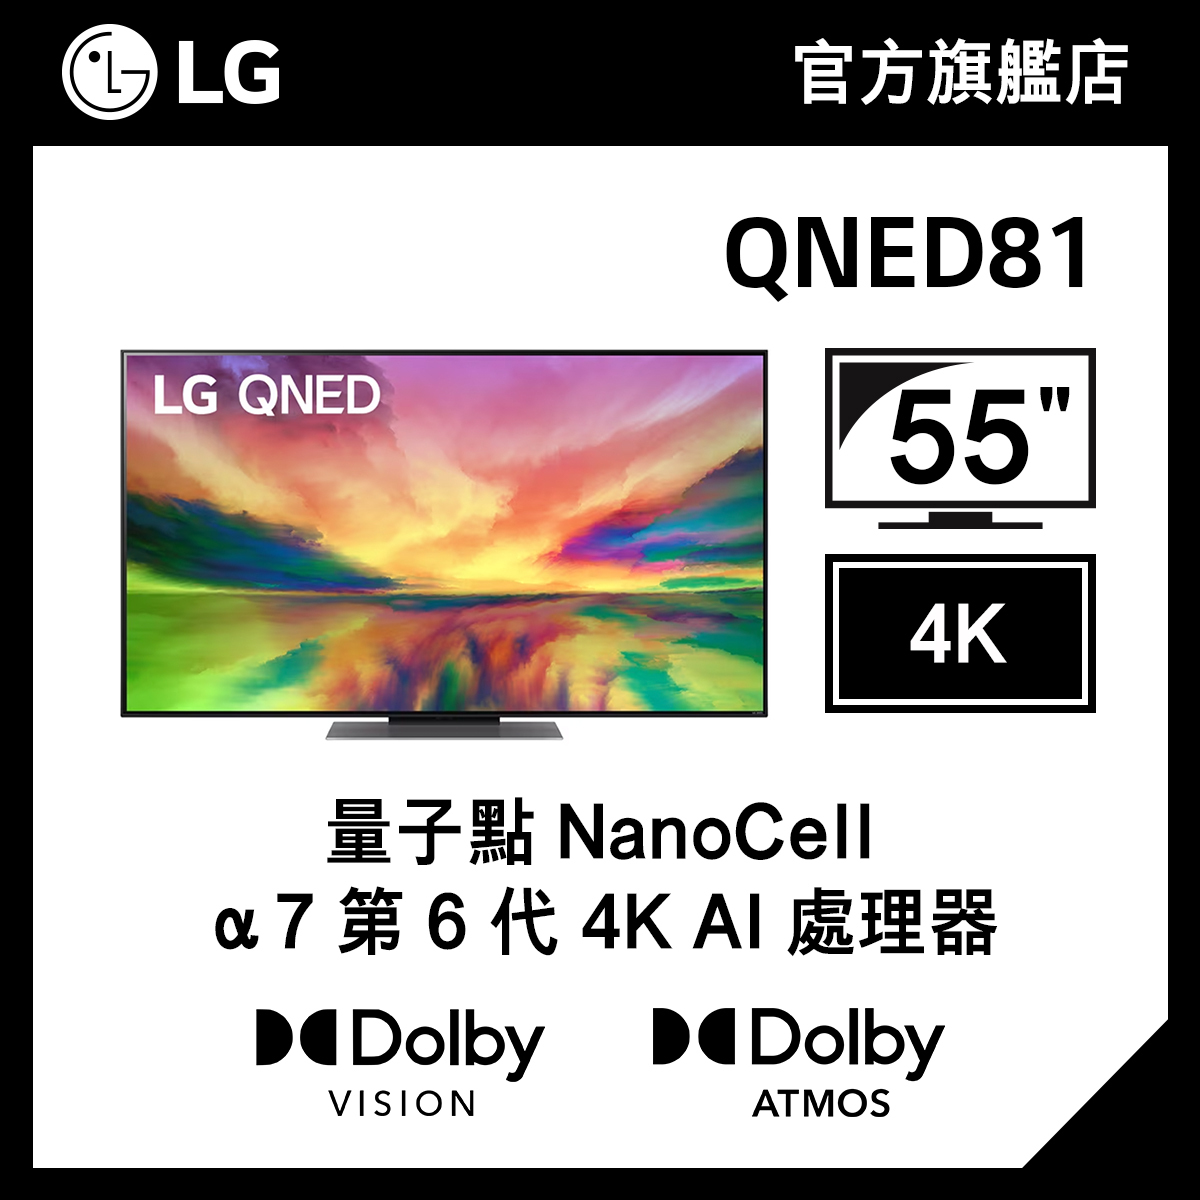 LG 55" QNED81 4K 智能電視